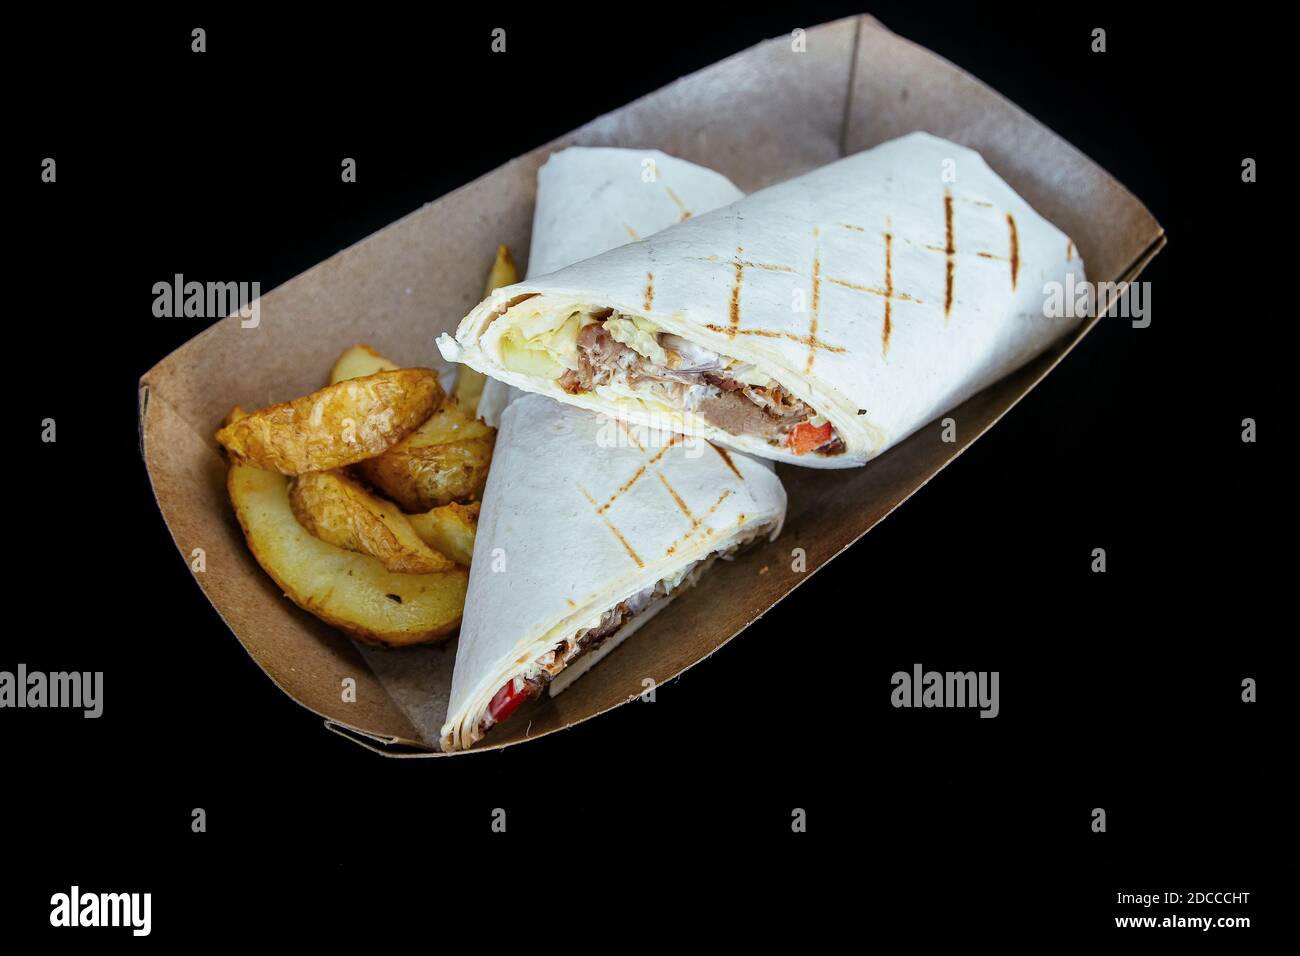 Le pita shawarma est rempli de légumes à base de viande, de assaisonnements et de sauce. Avec des frites. Dans une assiette en papier. Banque D'Images